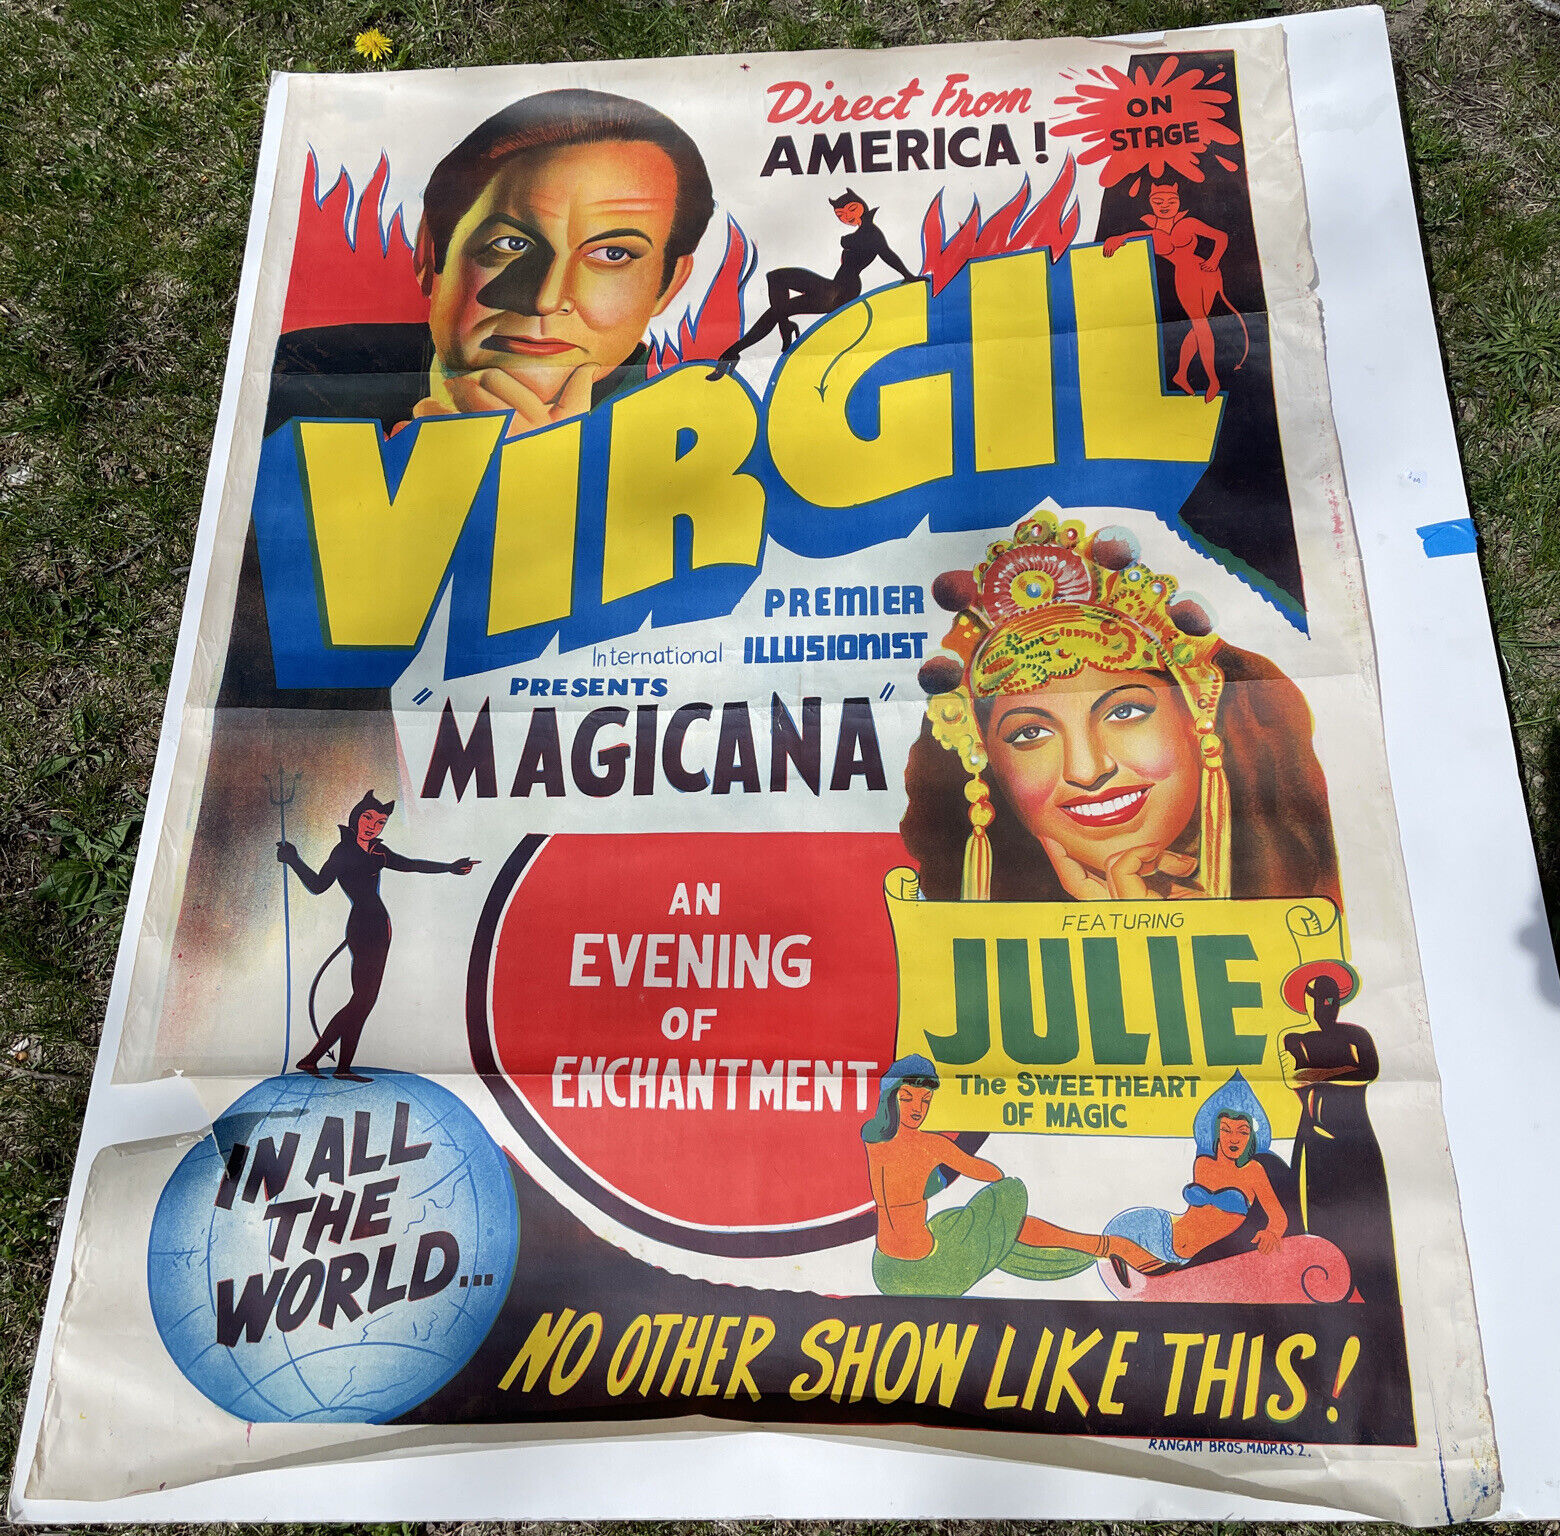 Virgil & Julie Vintage Magic Poster Full Color Magician magicana 30x40” 1940s